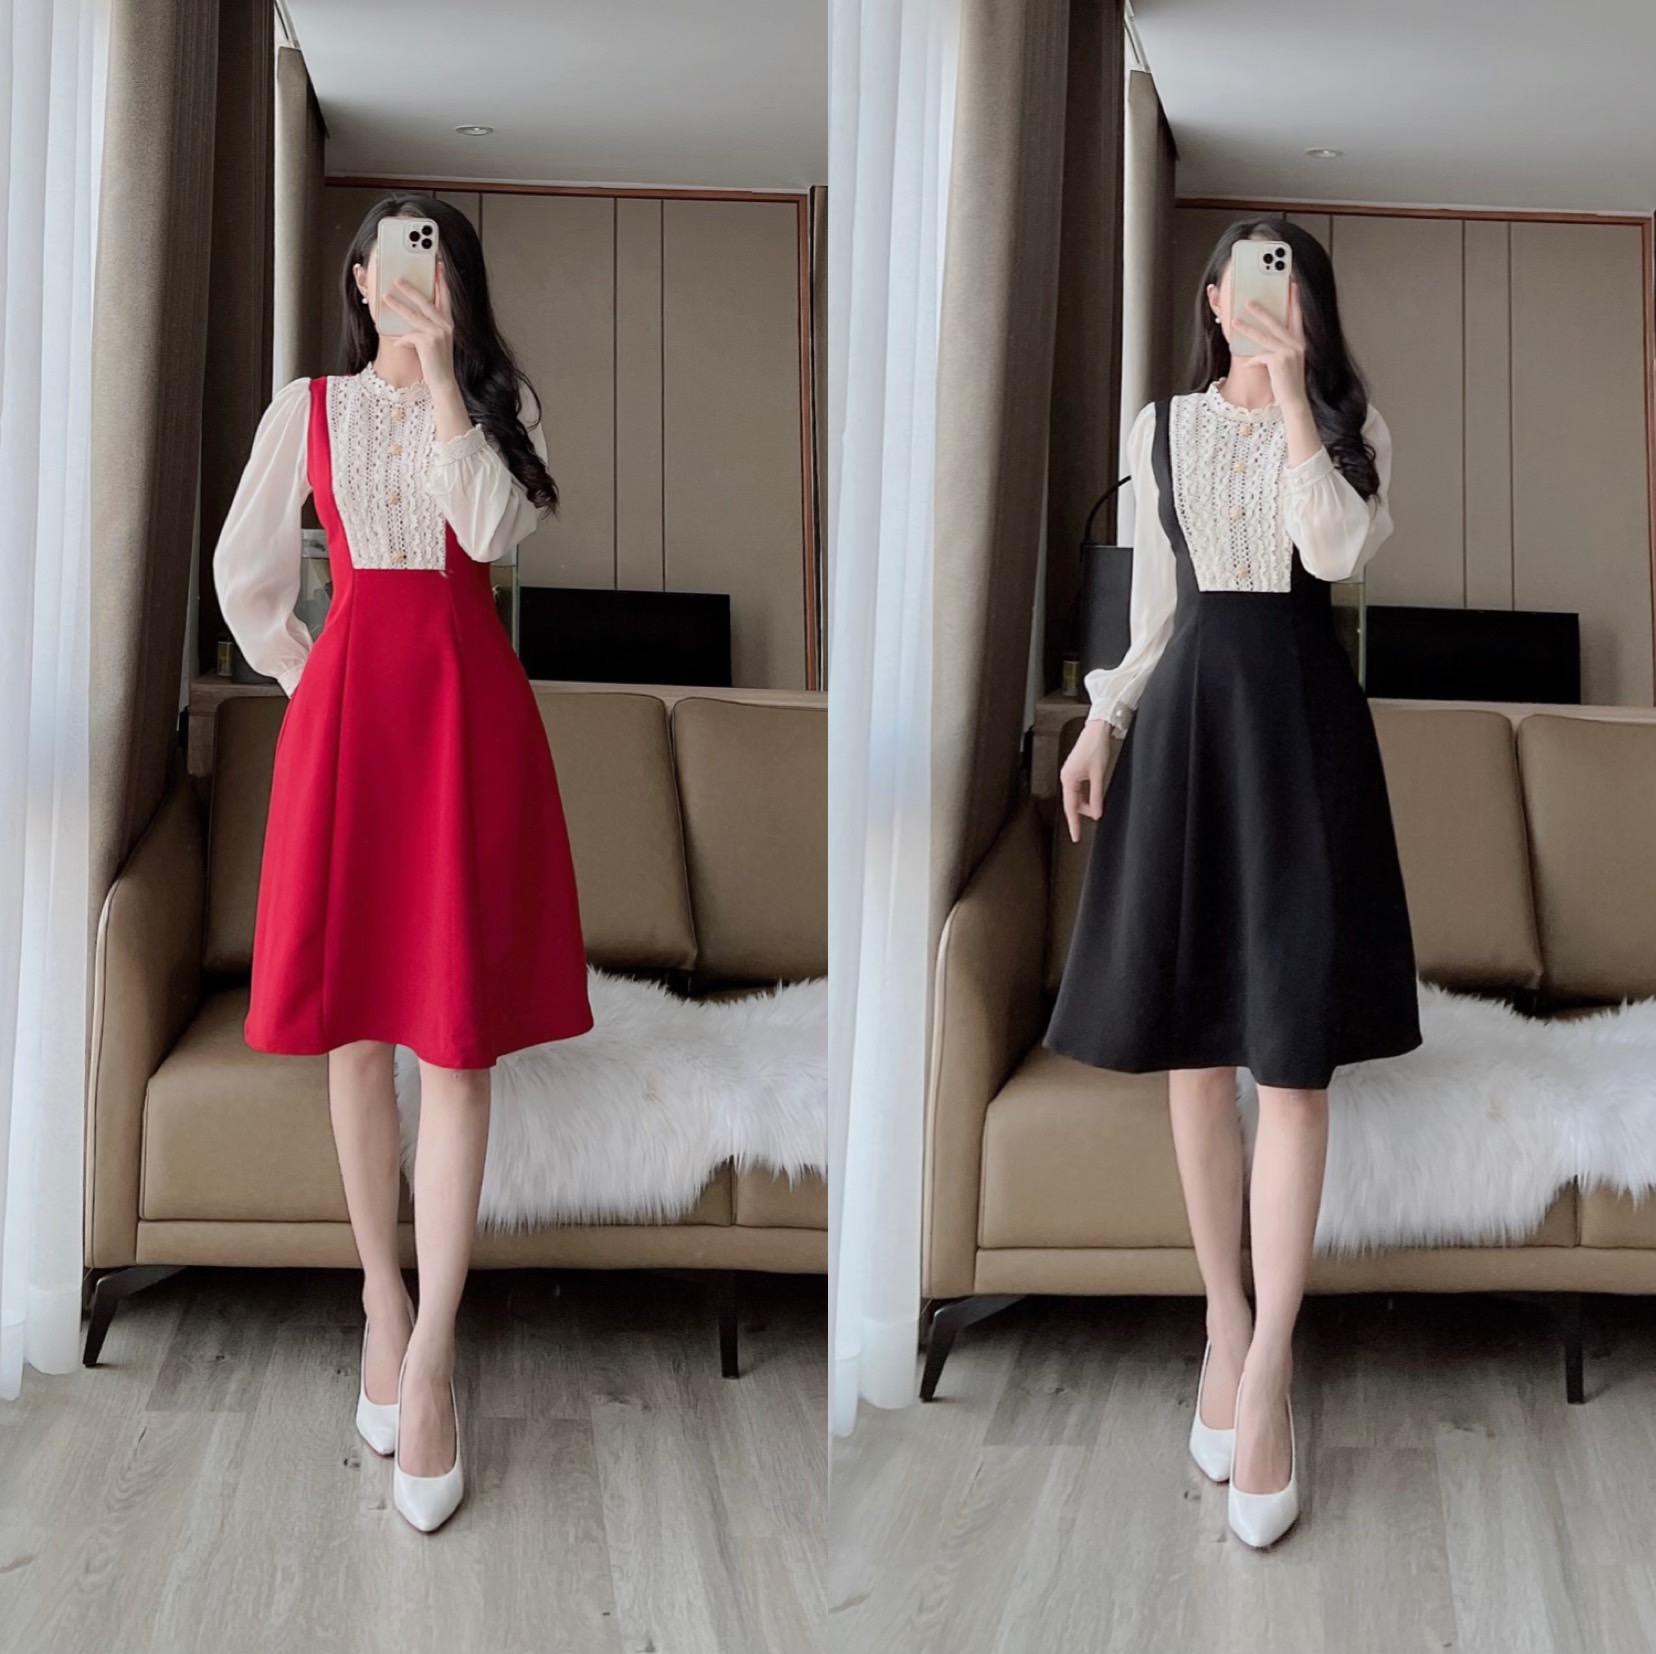 XinhXinh - Đầm xòe 2 dây viền ren cổ yếm cute diện ngày hè... | Facebook